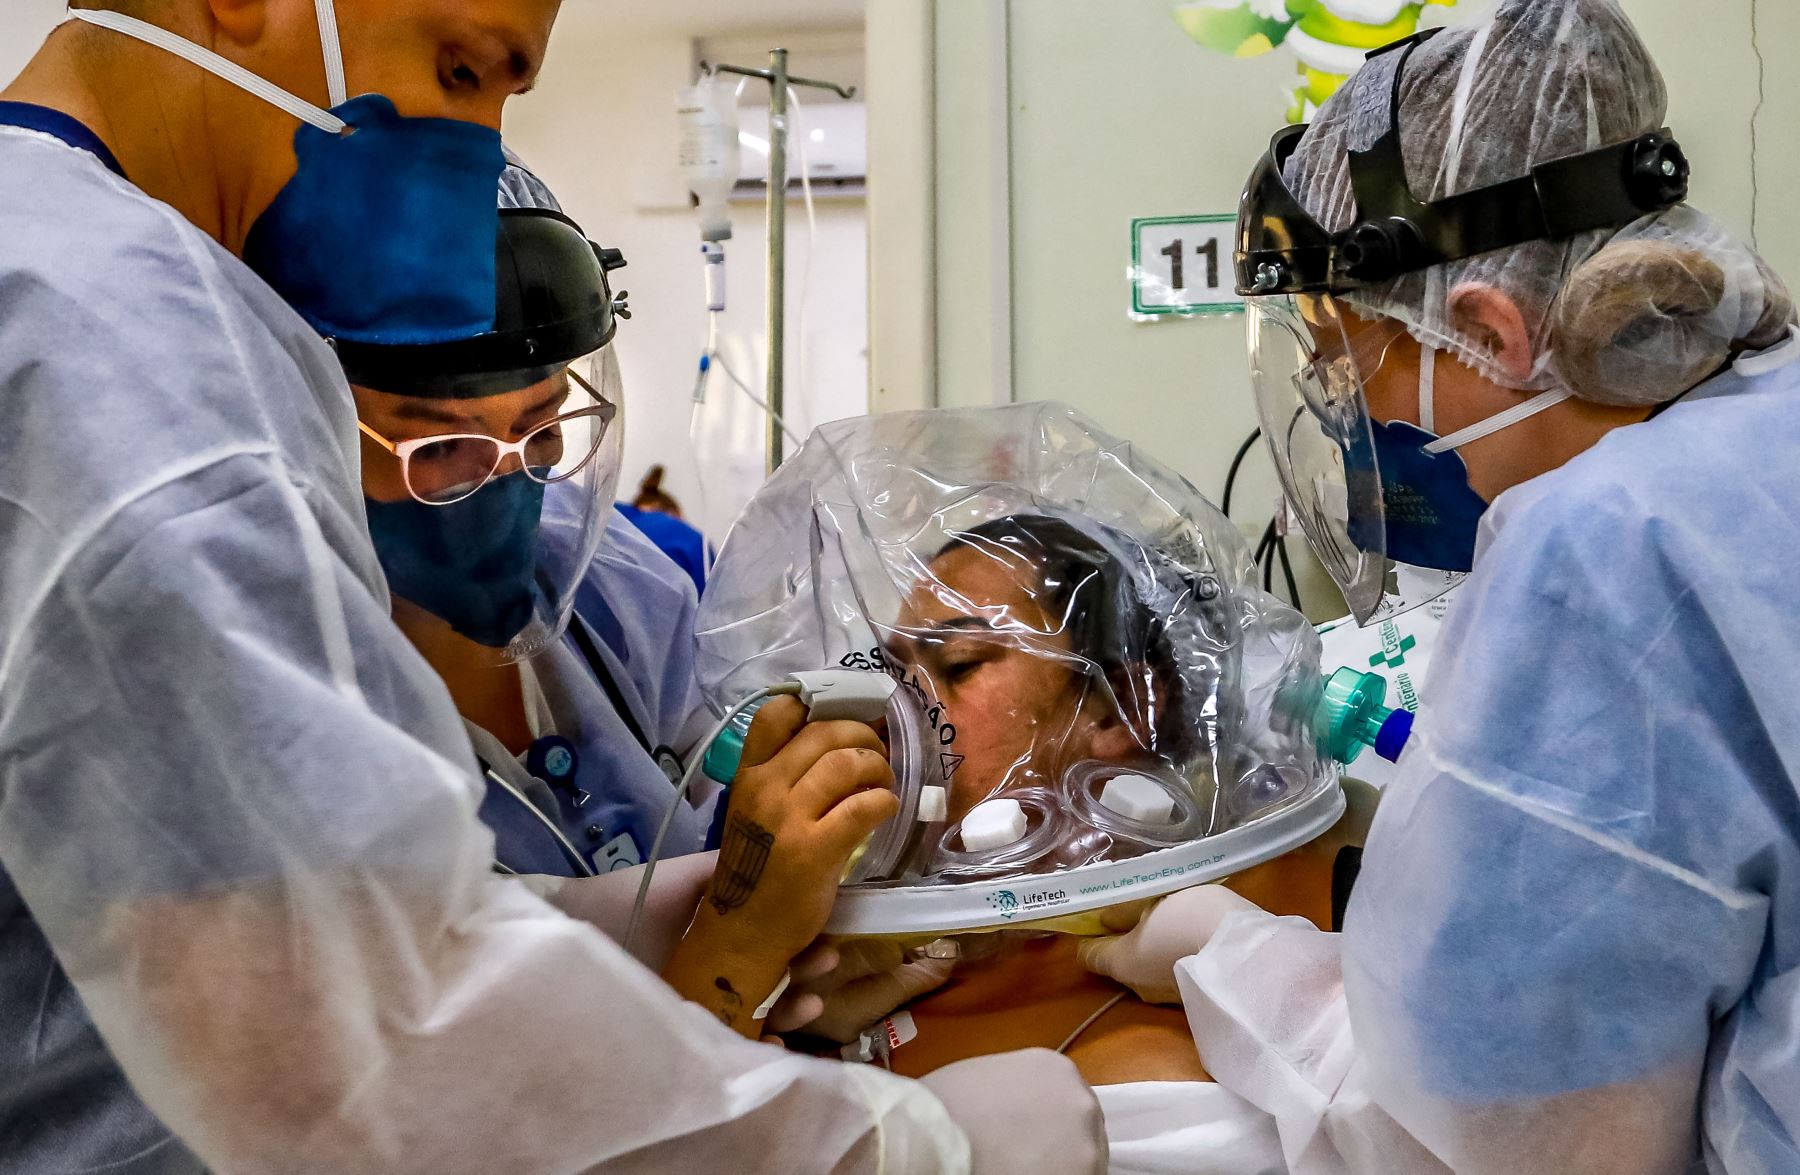 Brasil, uno de los tres países en el mundo más afectados por la pandemia en números absolutos junto a Estados Unidos e India, registra una tasa de mortalidad de 198 decesos por cada 100,000 habitantes. Foto: AFP.